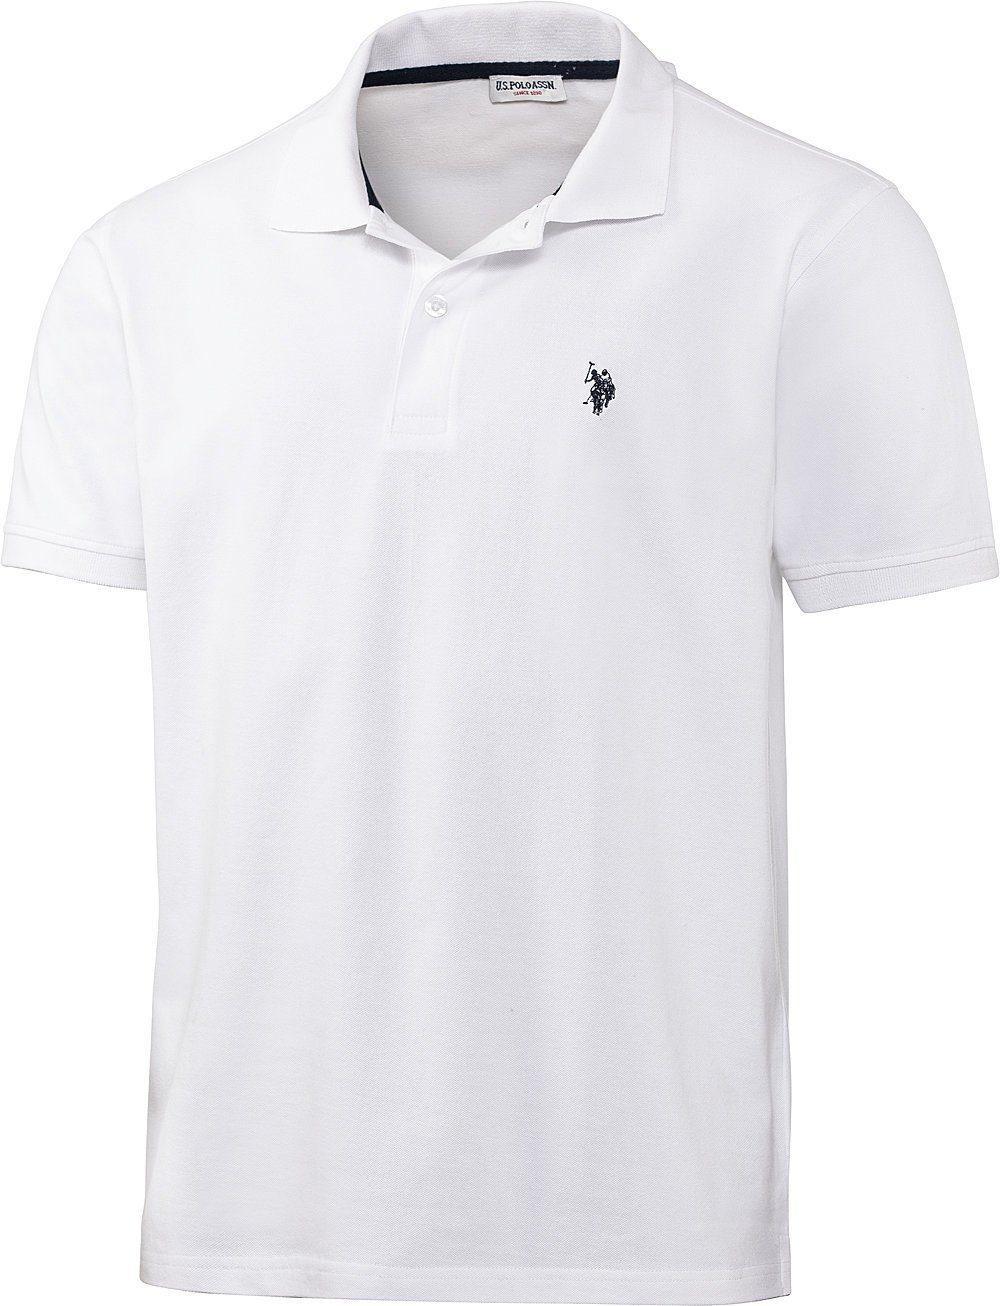 U.S. Poloshirt im Logo-Stick und Kontrastton Assn weiß Piqué-Struktur schöne Polo